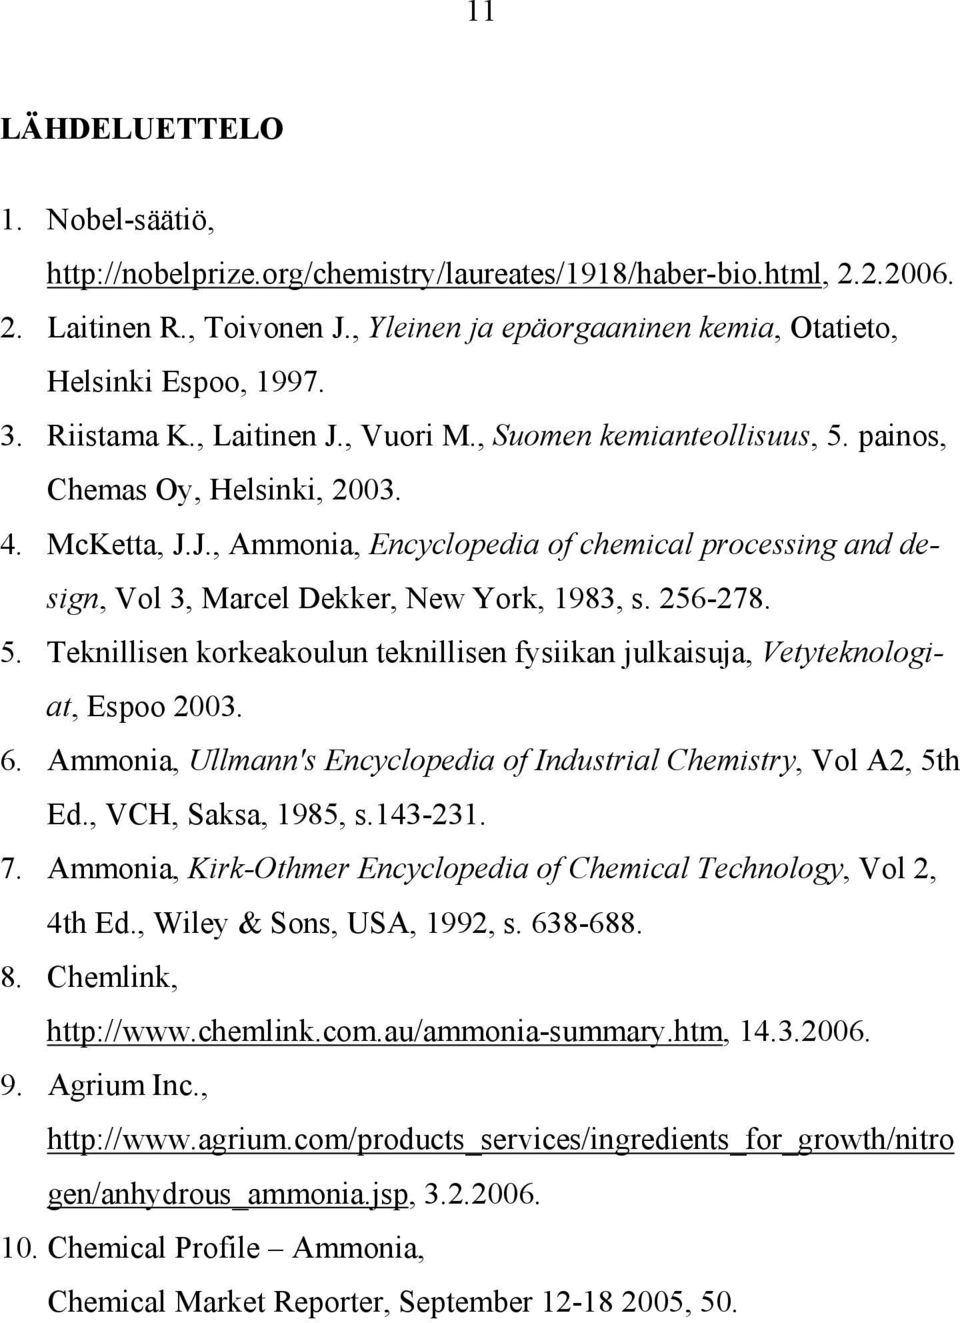 256-278. 5. Teknillisen korkeakoulun teknillisen fysiikan julkaisuja, Vetyteknologiat, Espoo 2003. 6. Ammonia, Ullmann's Encyclopedia of Industrial Chemistry, Vol A2, 5th Ed., VCH, Saksa, 1985, s.